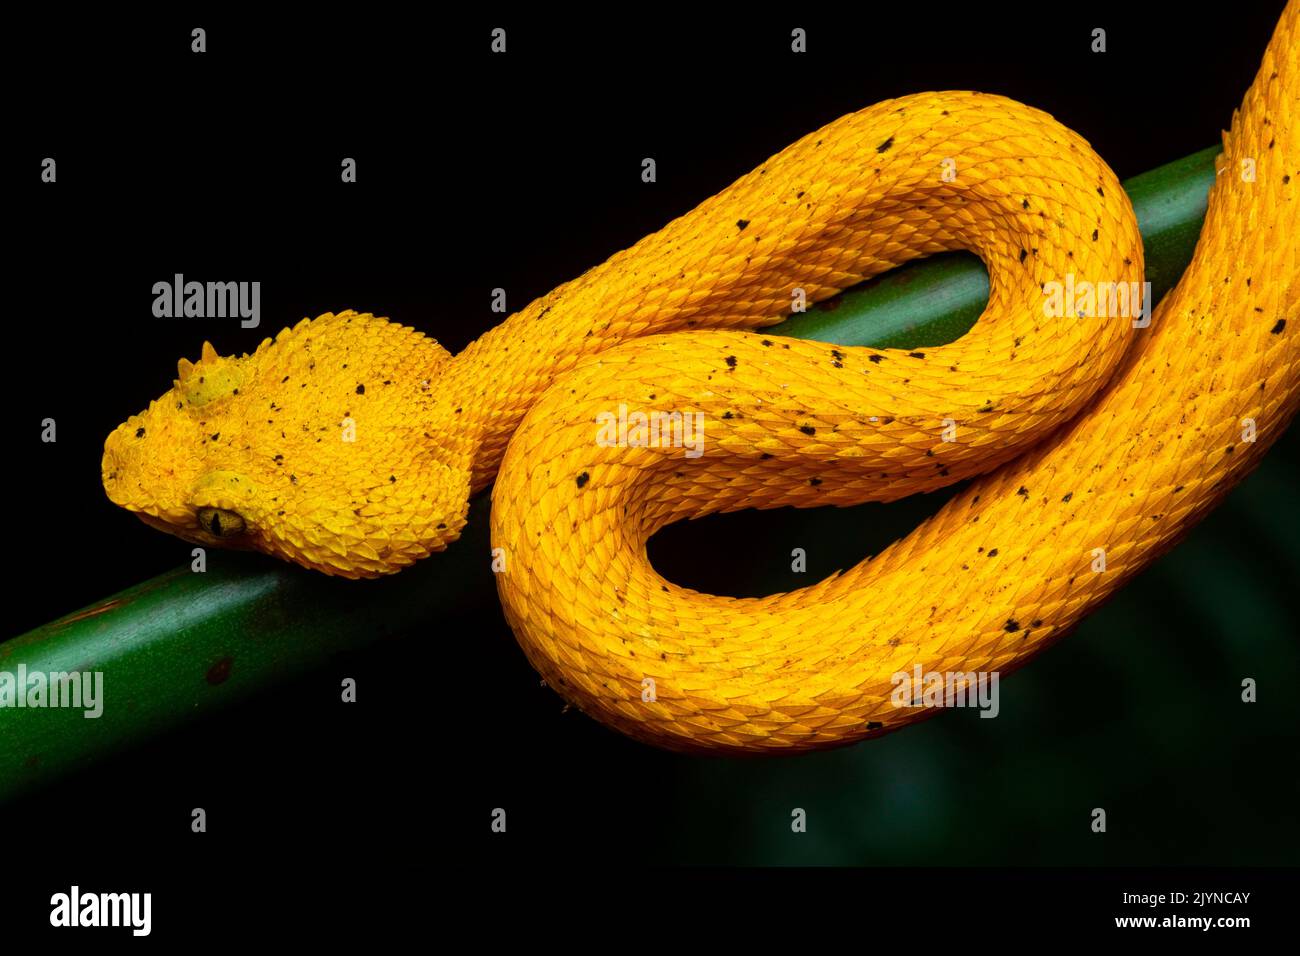 Wimpern-Viper (Bothriechis schlegelii) in situ, gelbe Form, Manzanillo, Costa Rica Stockfoto